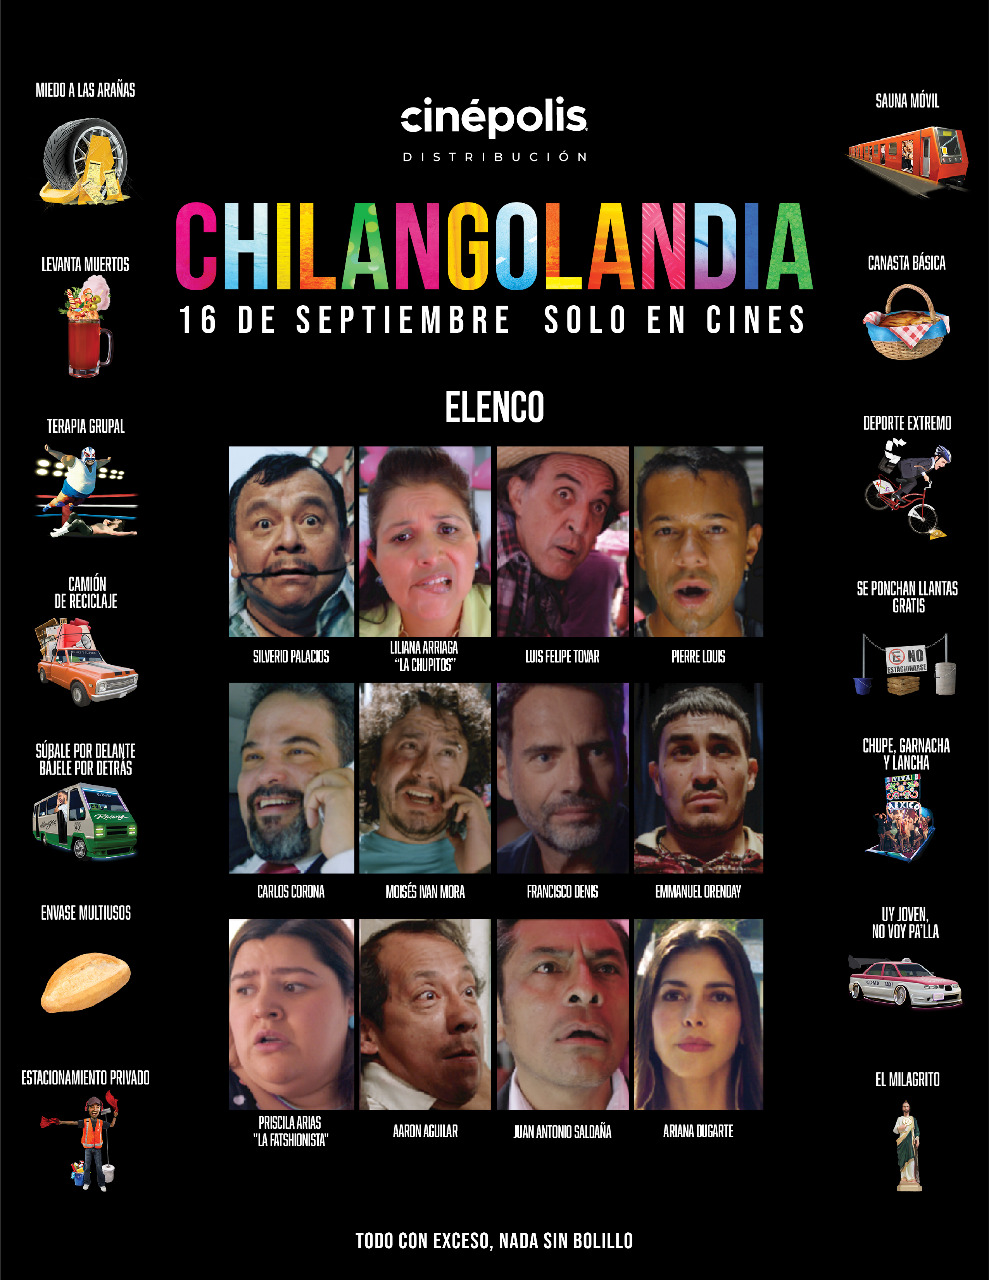 Llega Chilangolandia el 16 de Septiembre a Cinepolis